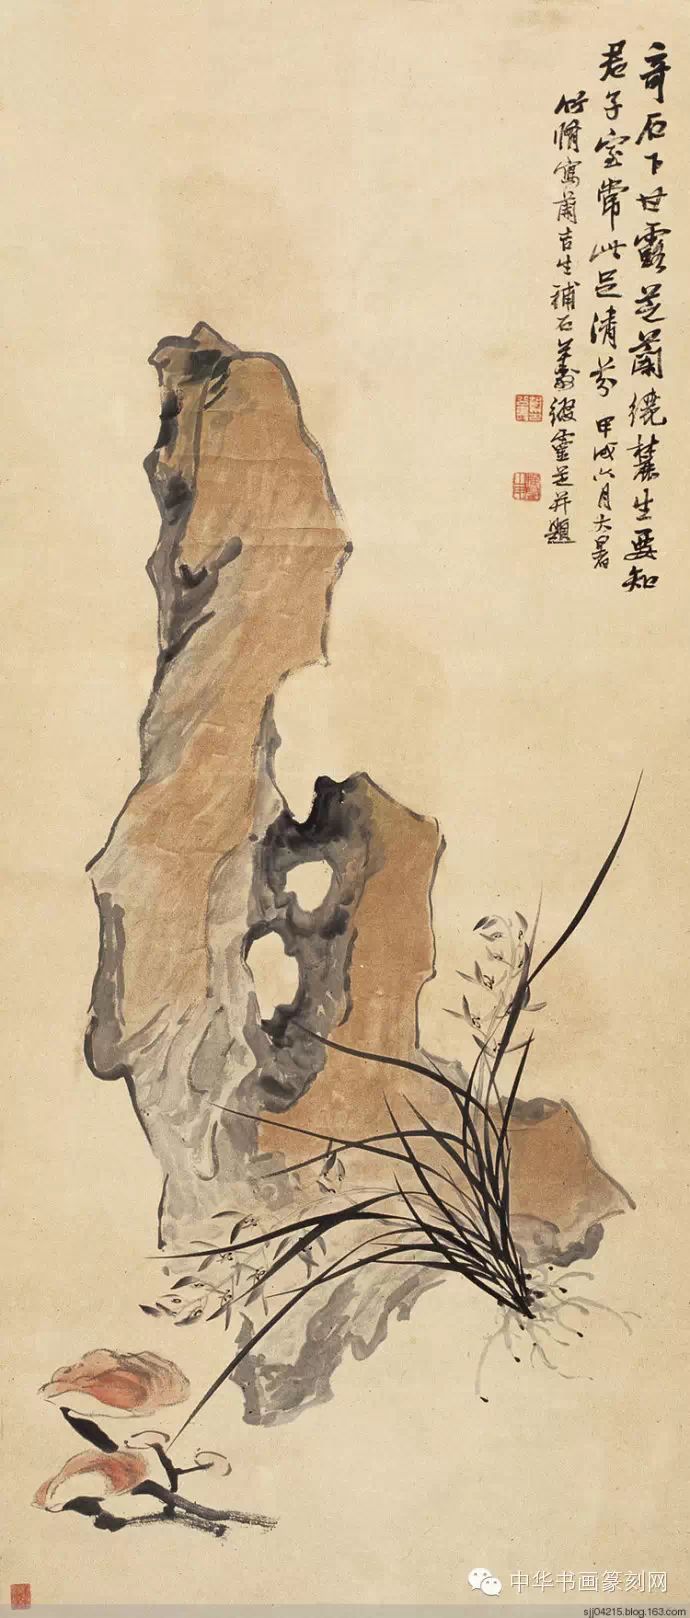 欣赏:论石头在山水花鸟画中的重要性,名家画石头